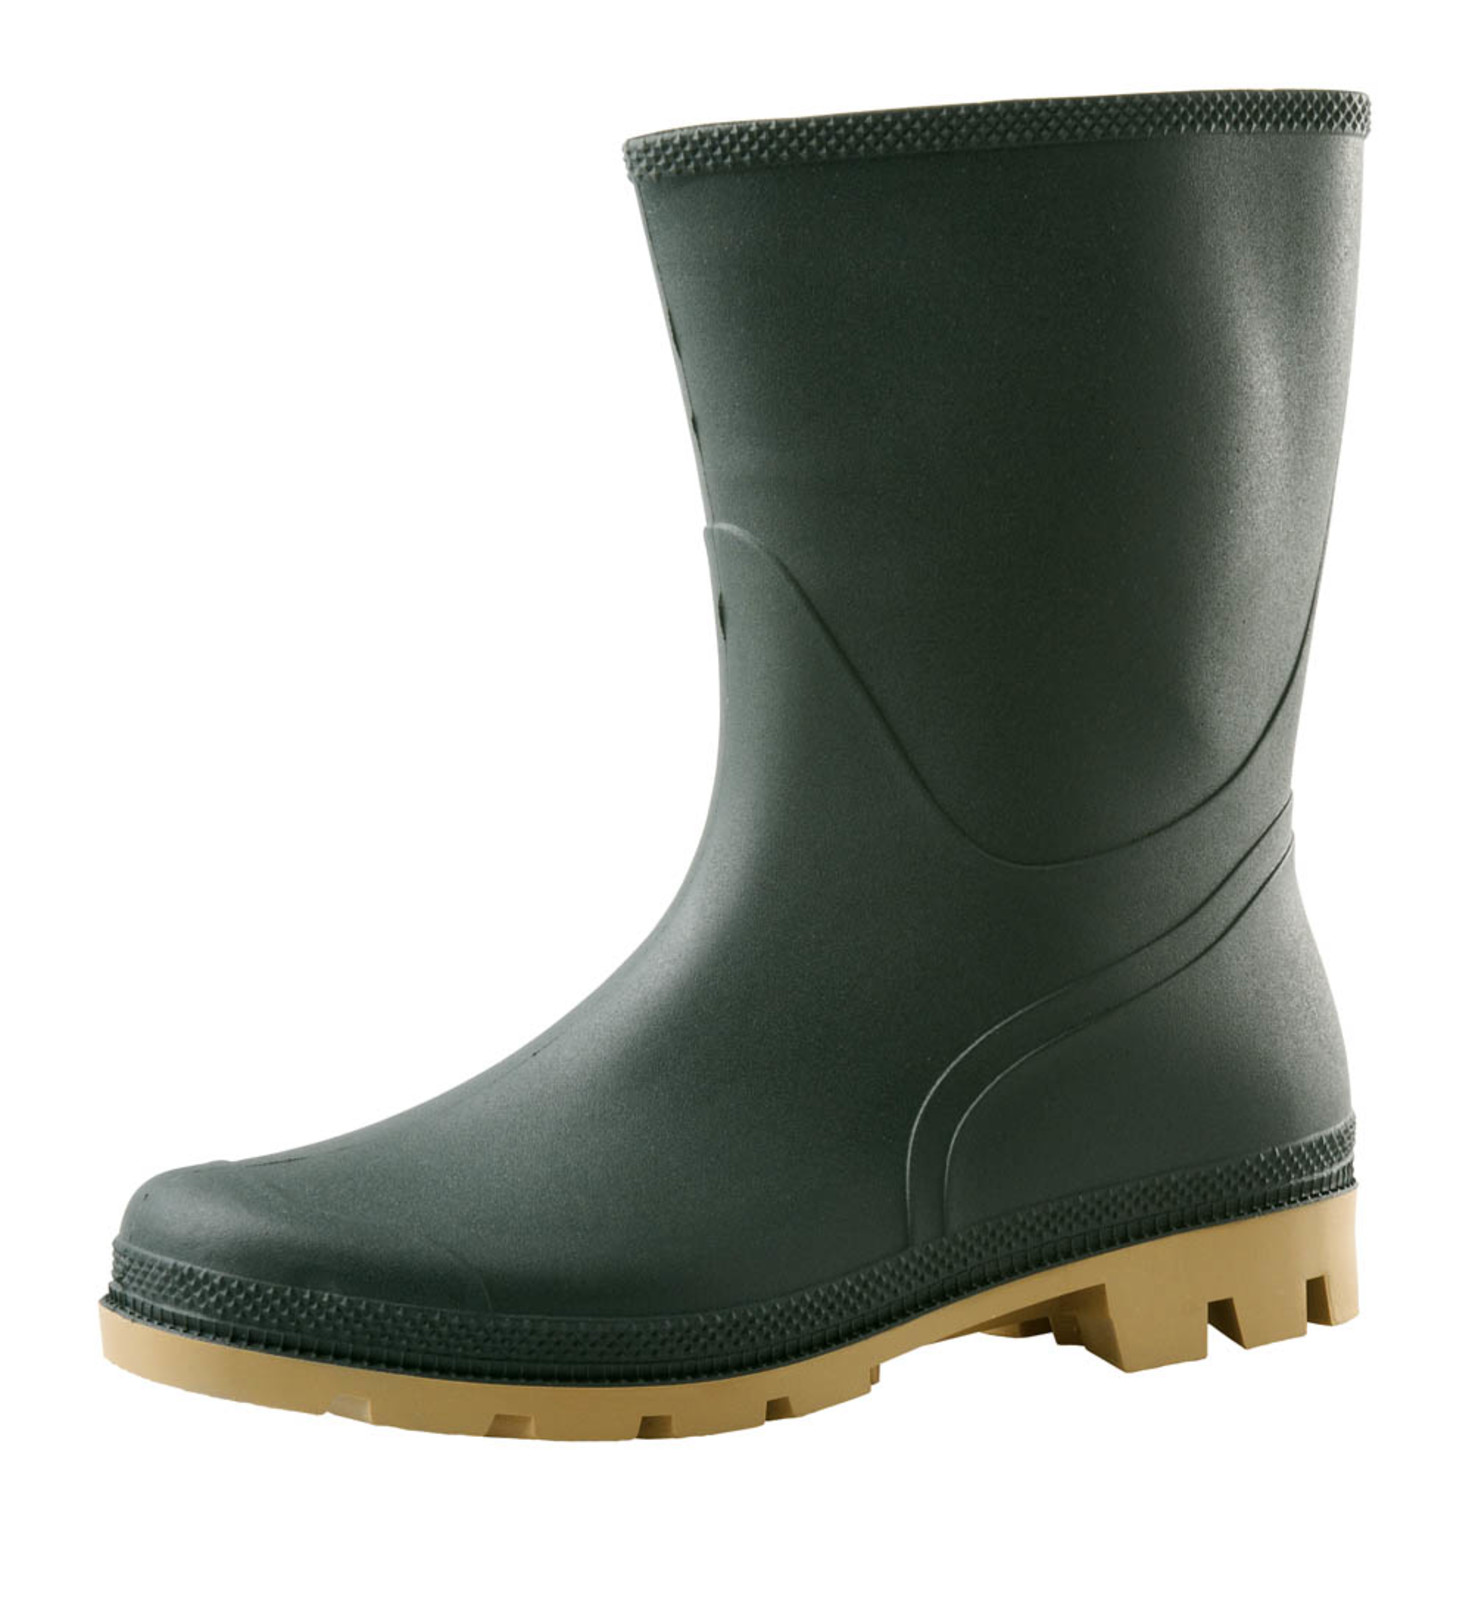 Gumáky Boots Troncheto PVC nízke - veľkosť: 42, farba: zelená